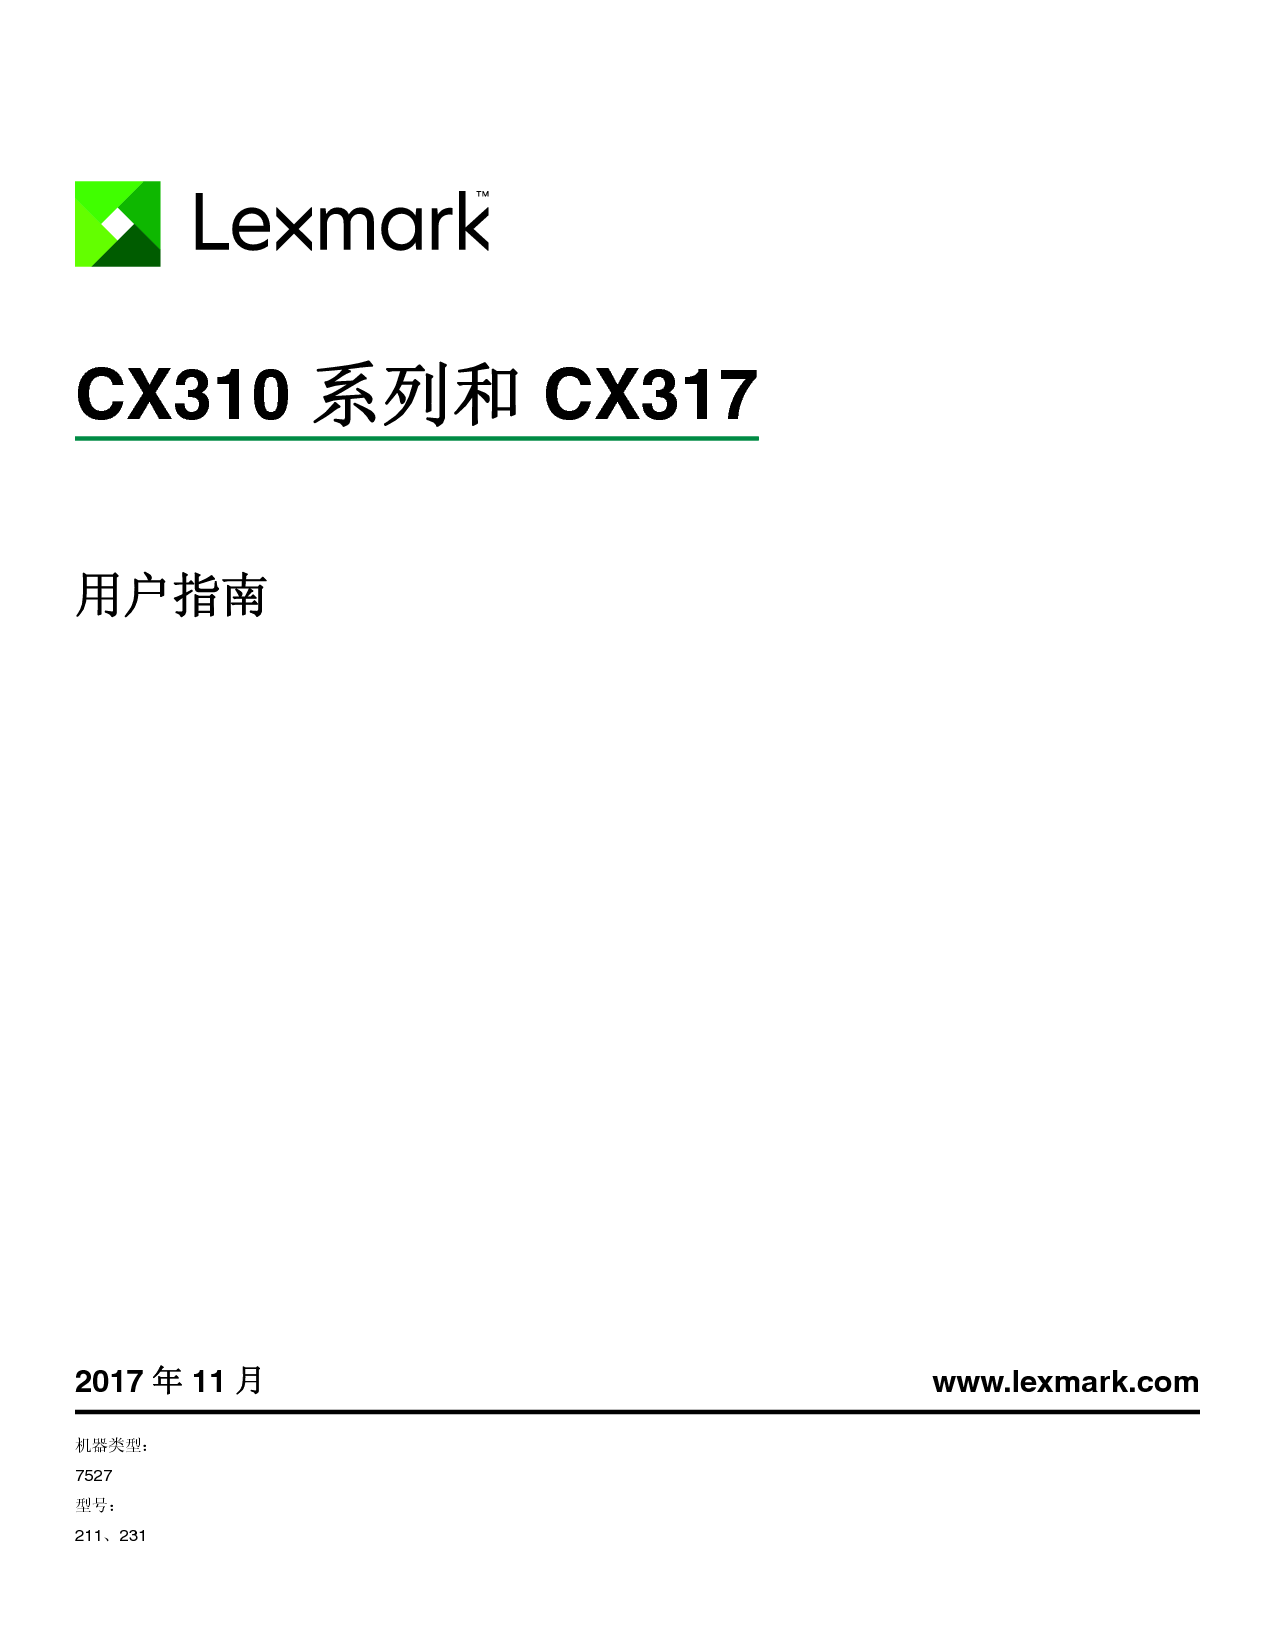 利盟 Lexmark CX310 用户指南 封面